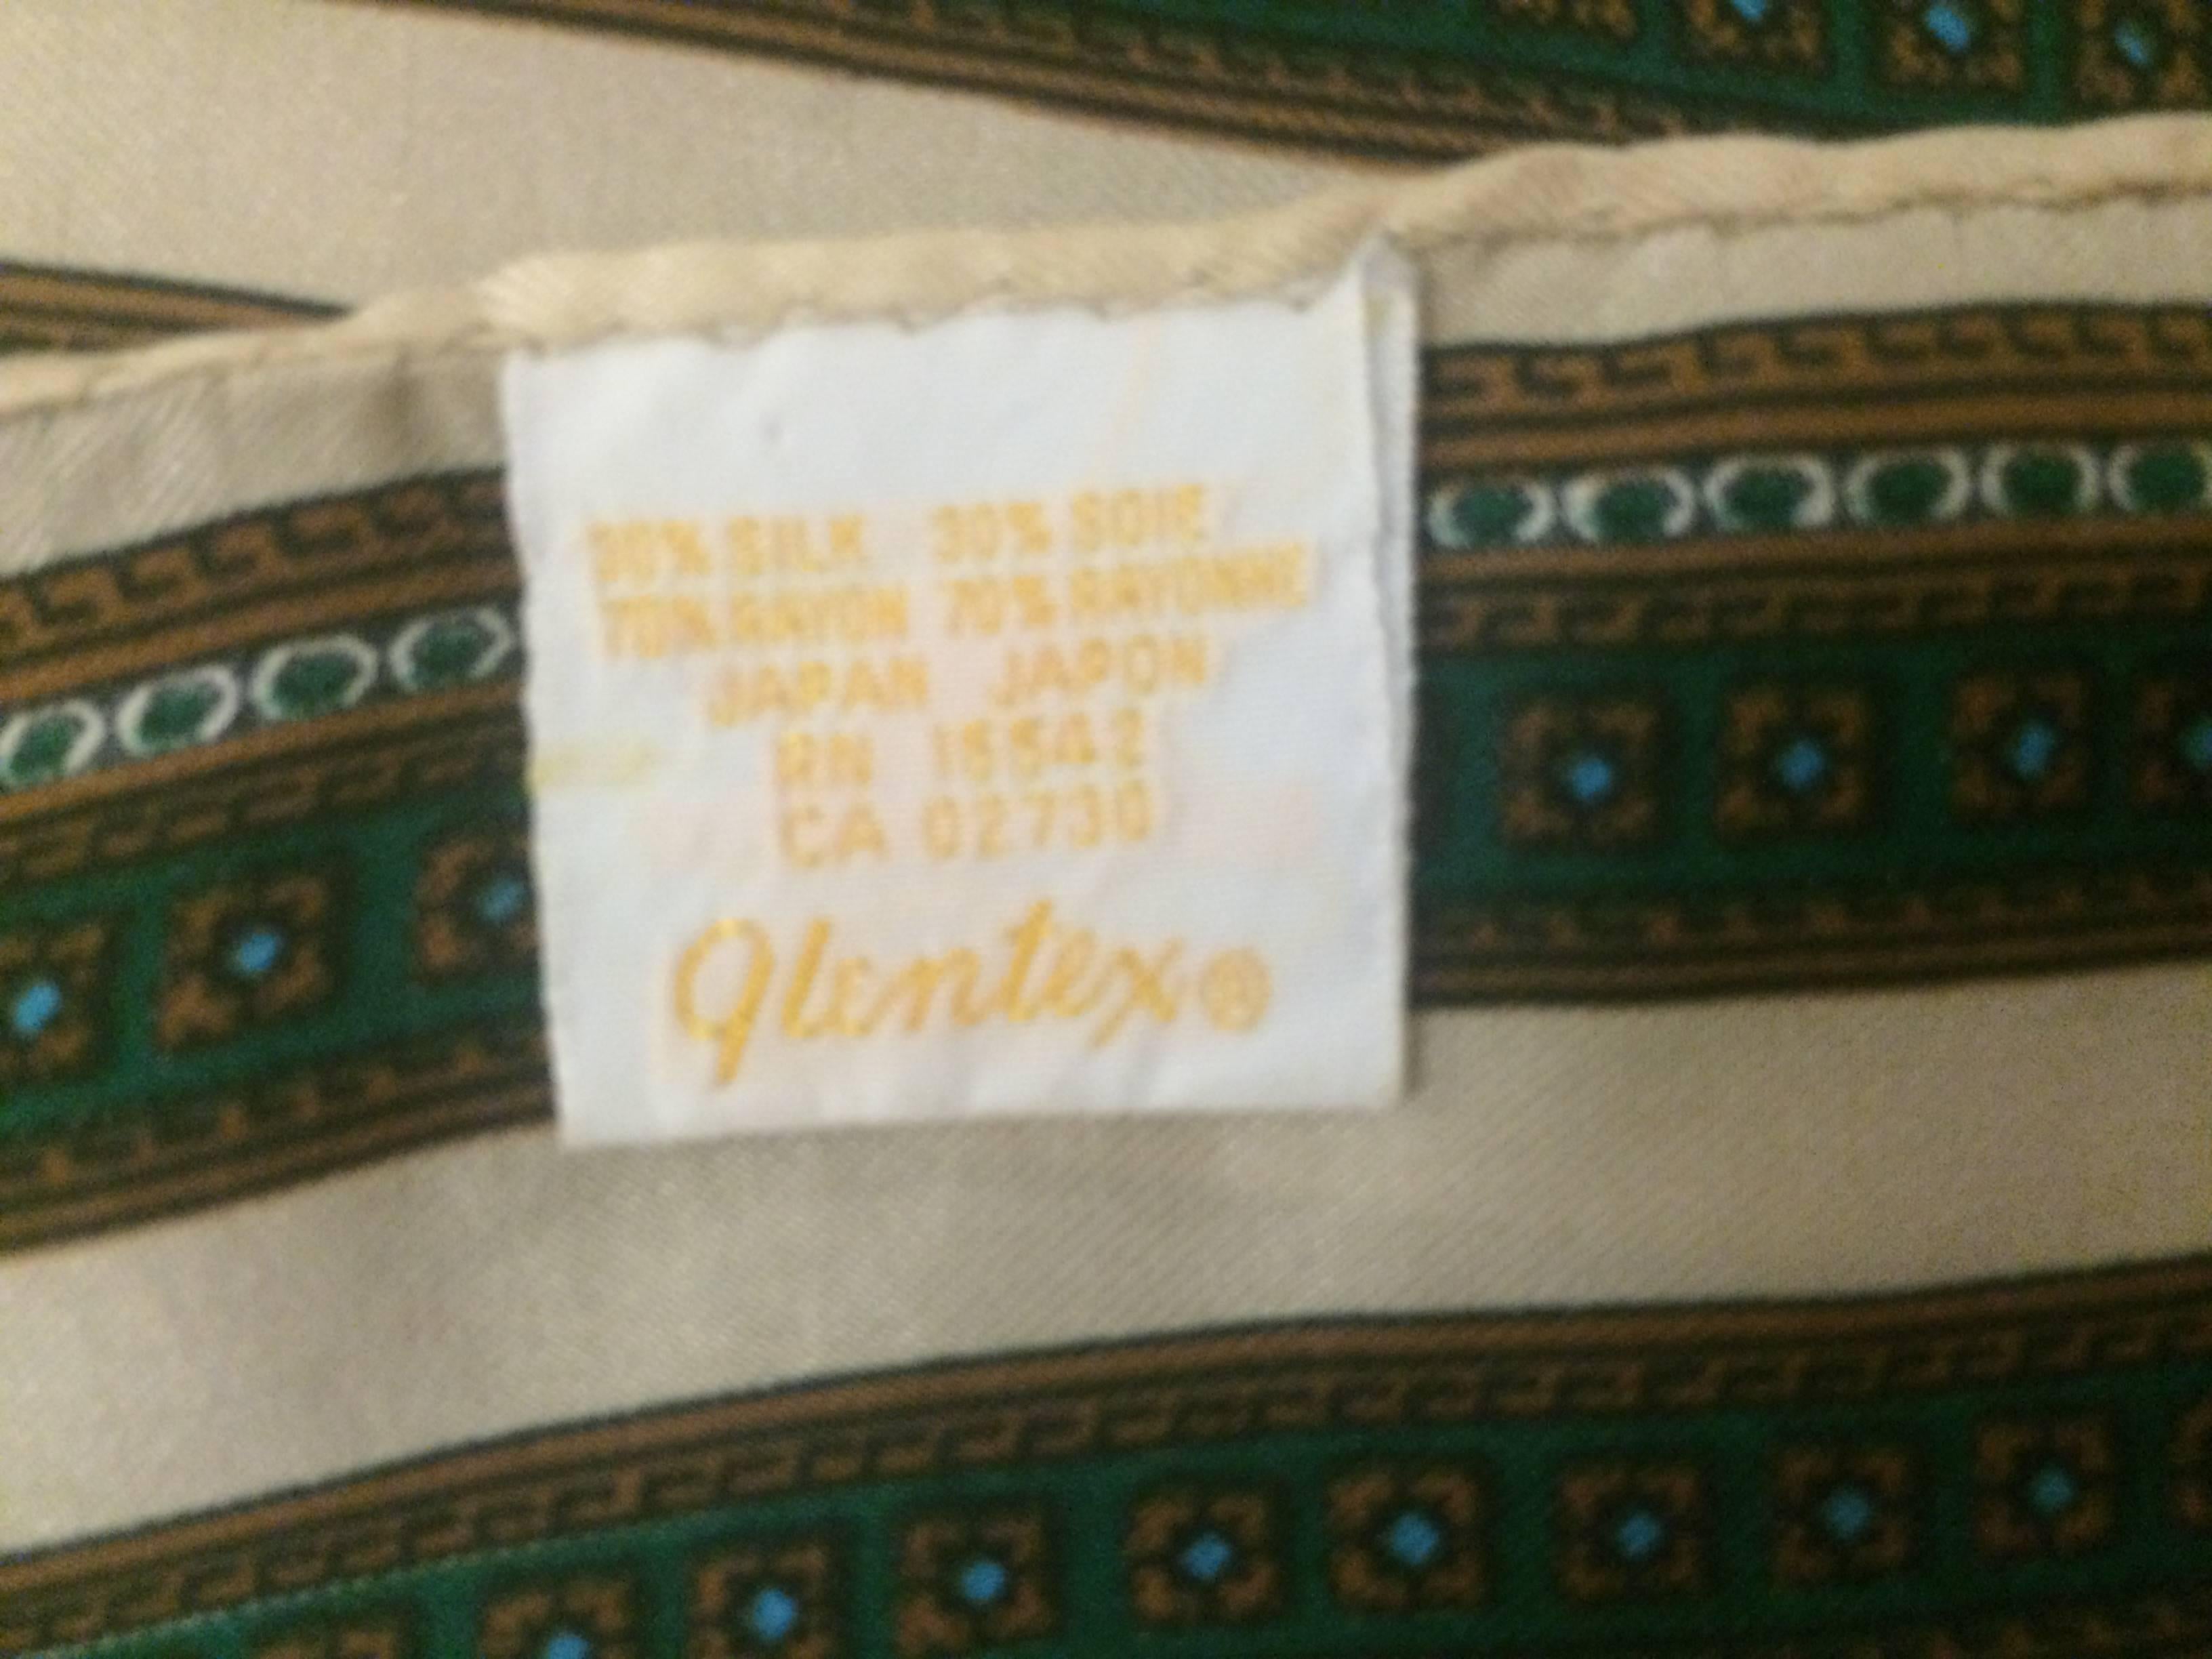 glentex scarf made in italy